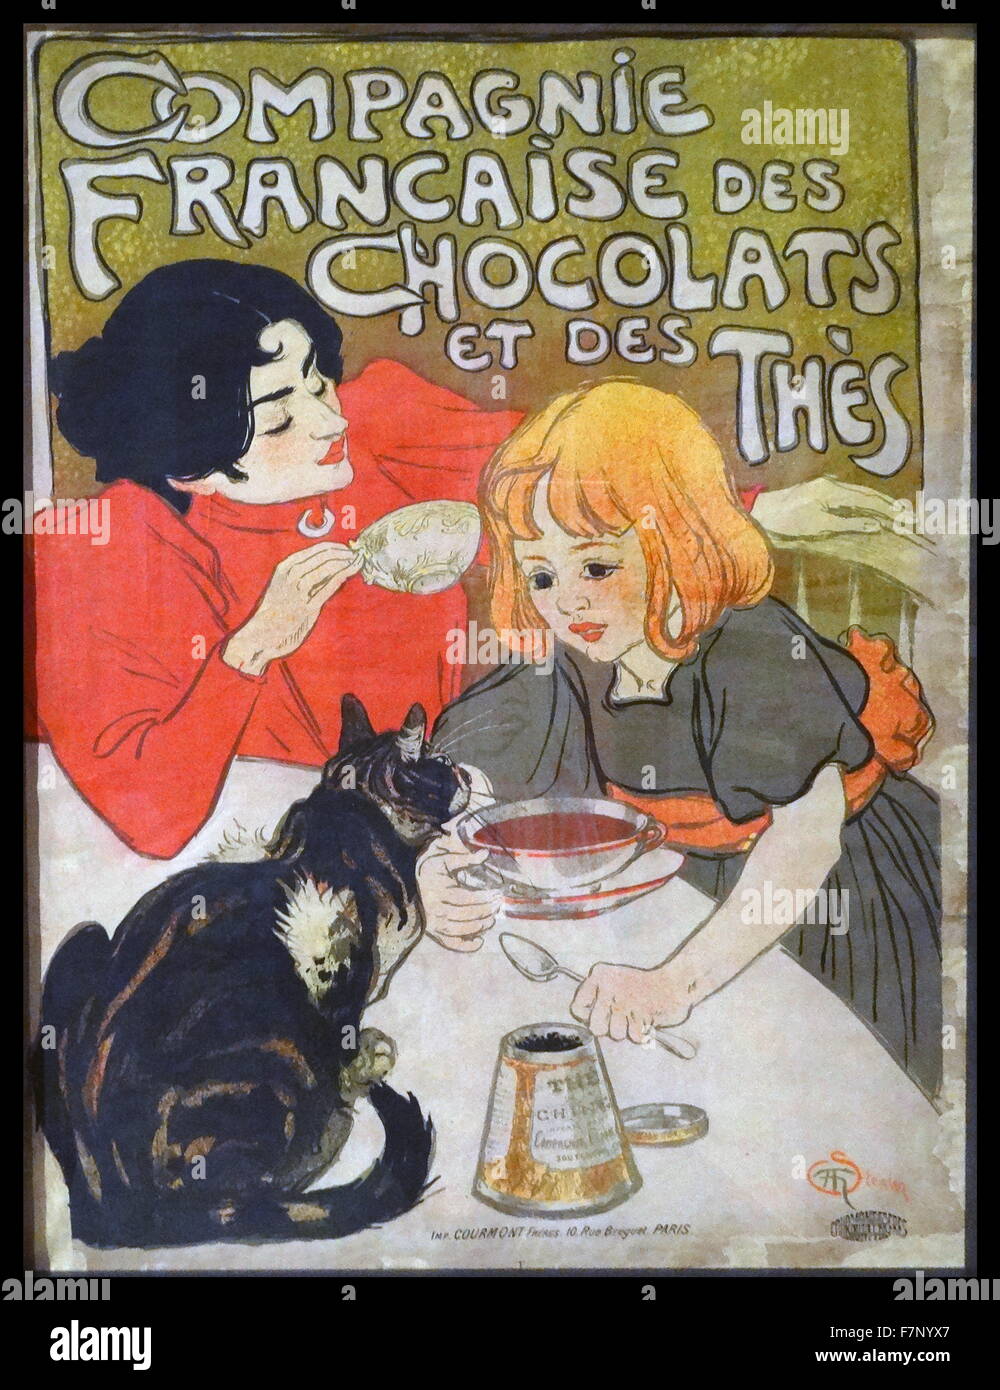 Plakatwerbung für französische Schokoladen von Théophile Alexandre Steinlen (1859-1923) Schweiz geborene französische Art Nouveau Maler und Grafiker. Datiert 1895 Stockfoto